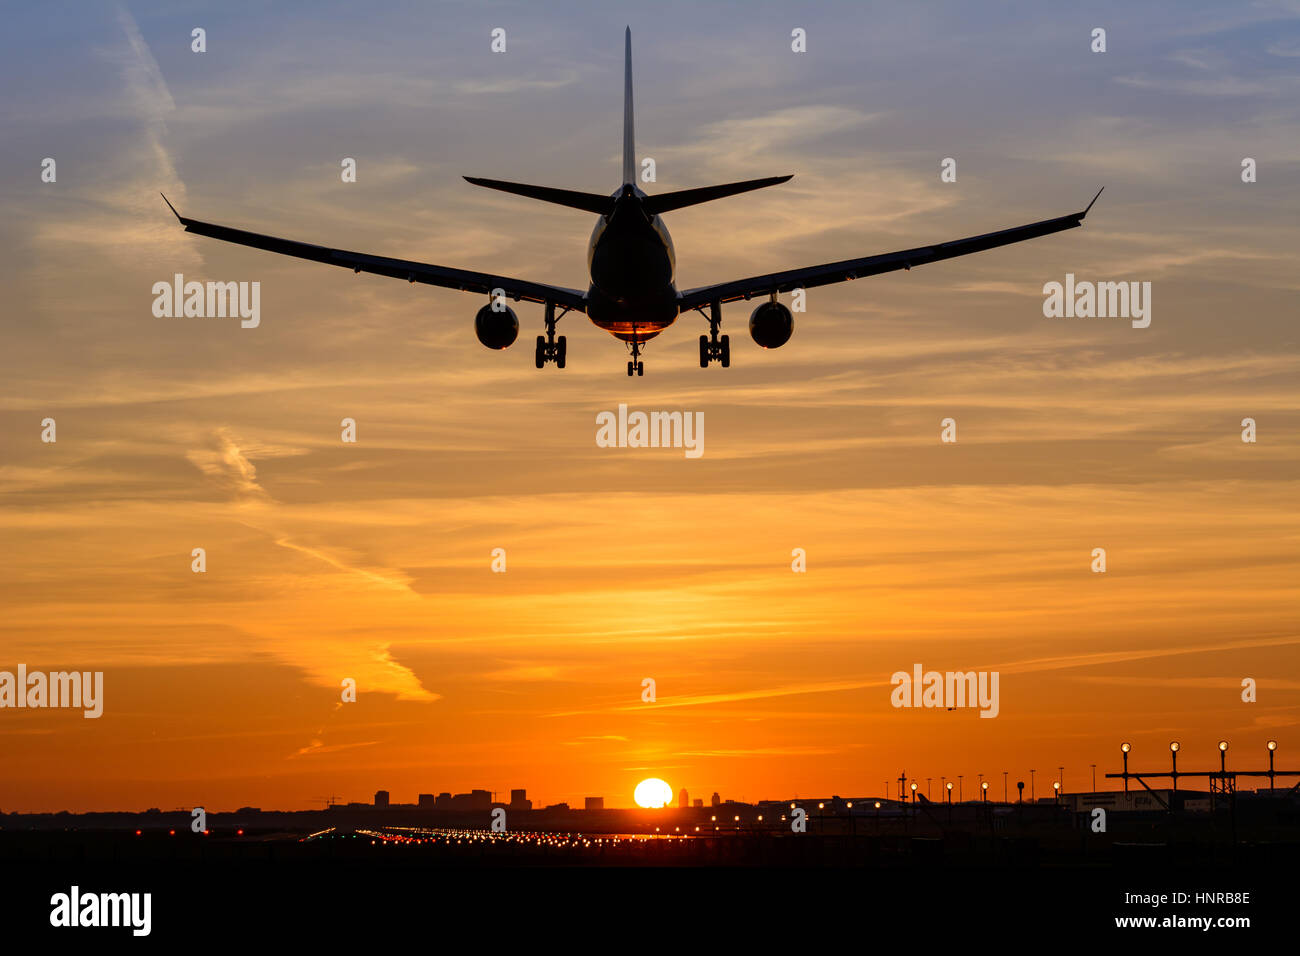 Avion de passagers au cours de l'atterrissage est un magnifique lever du soleil. L'avion est presque posé sur la piste. Banque D'Images